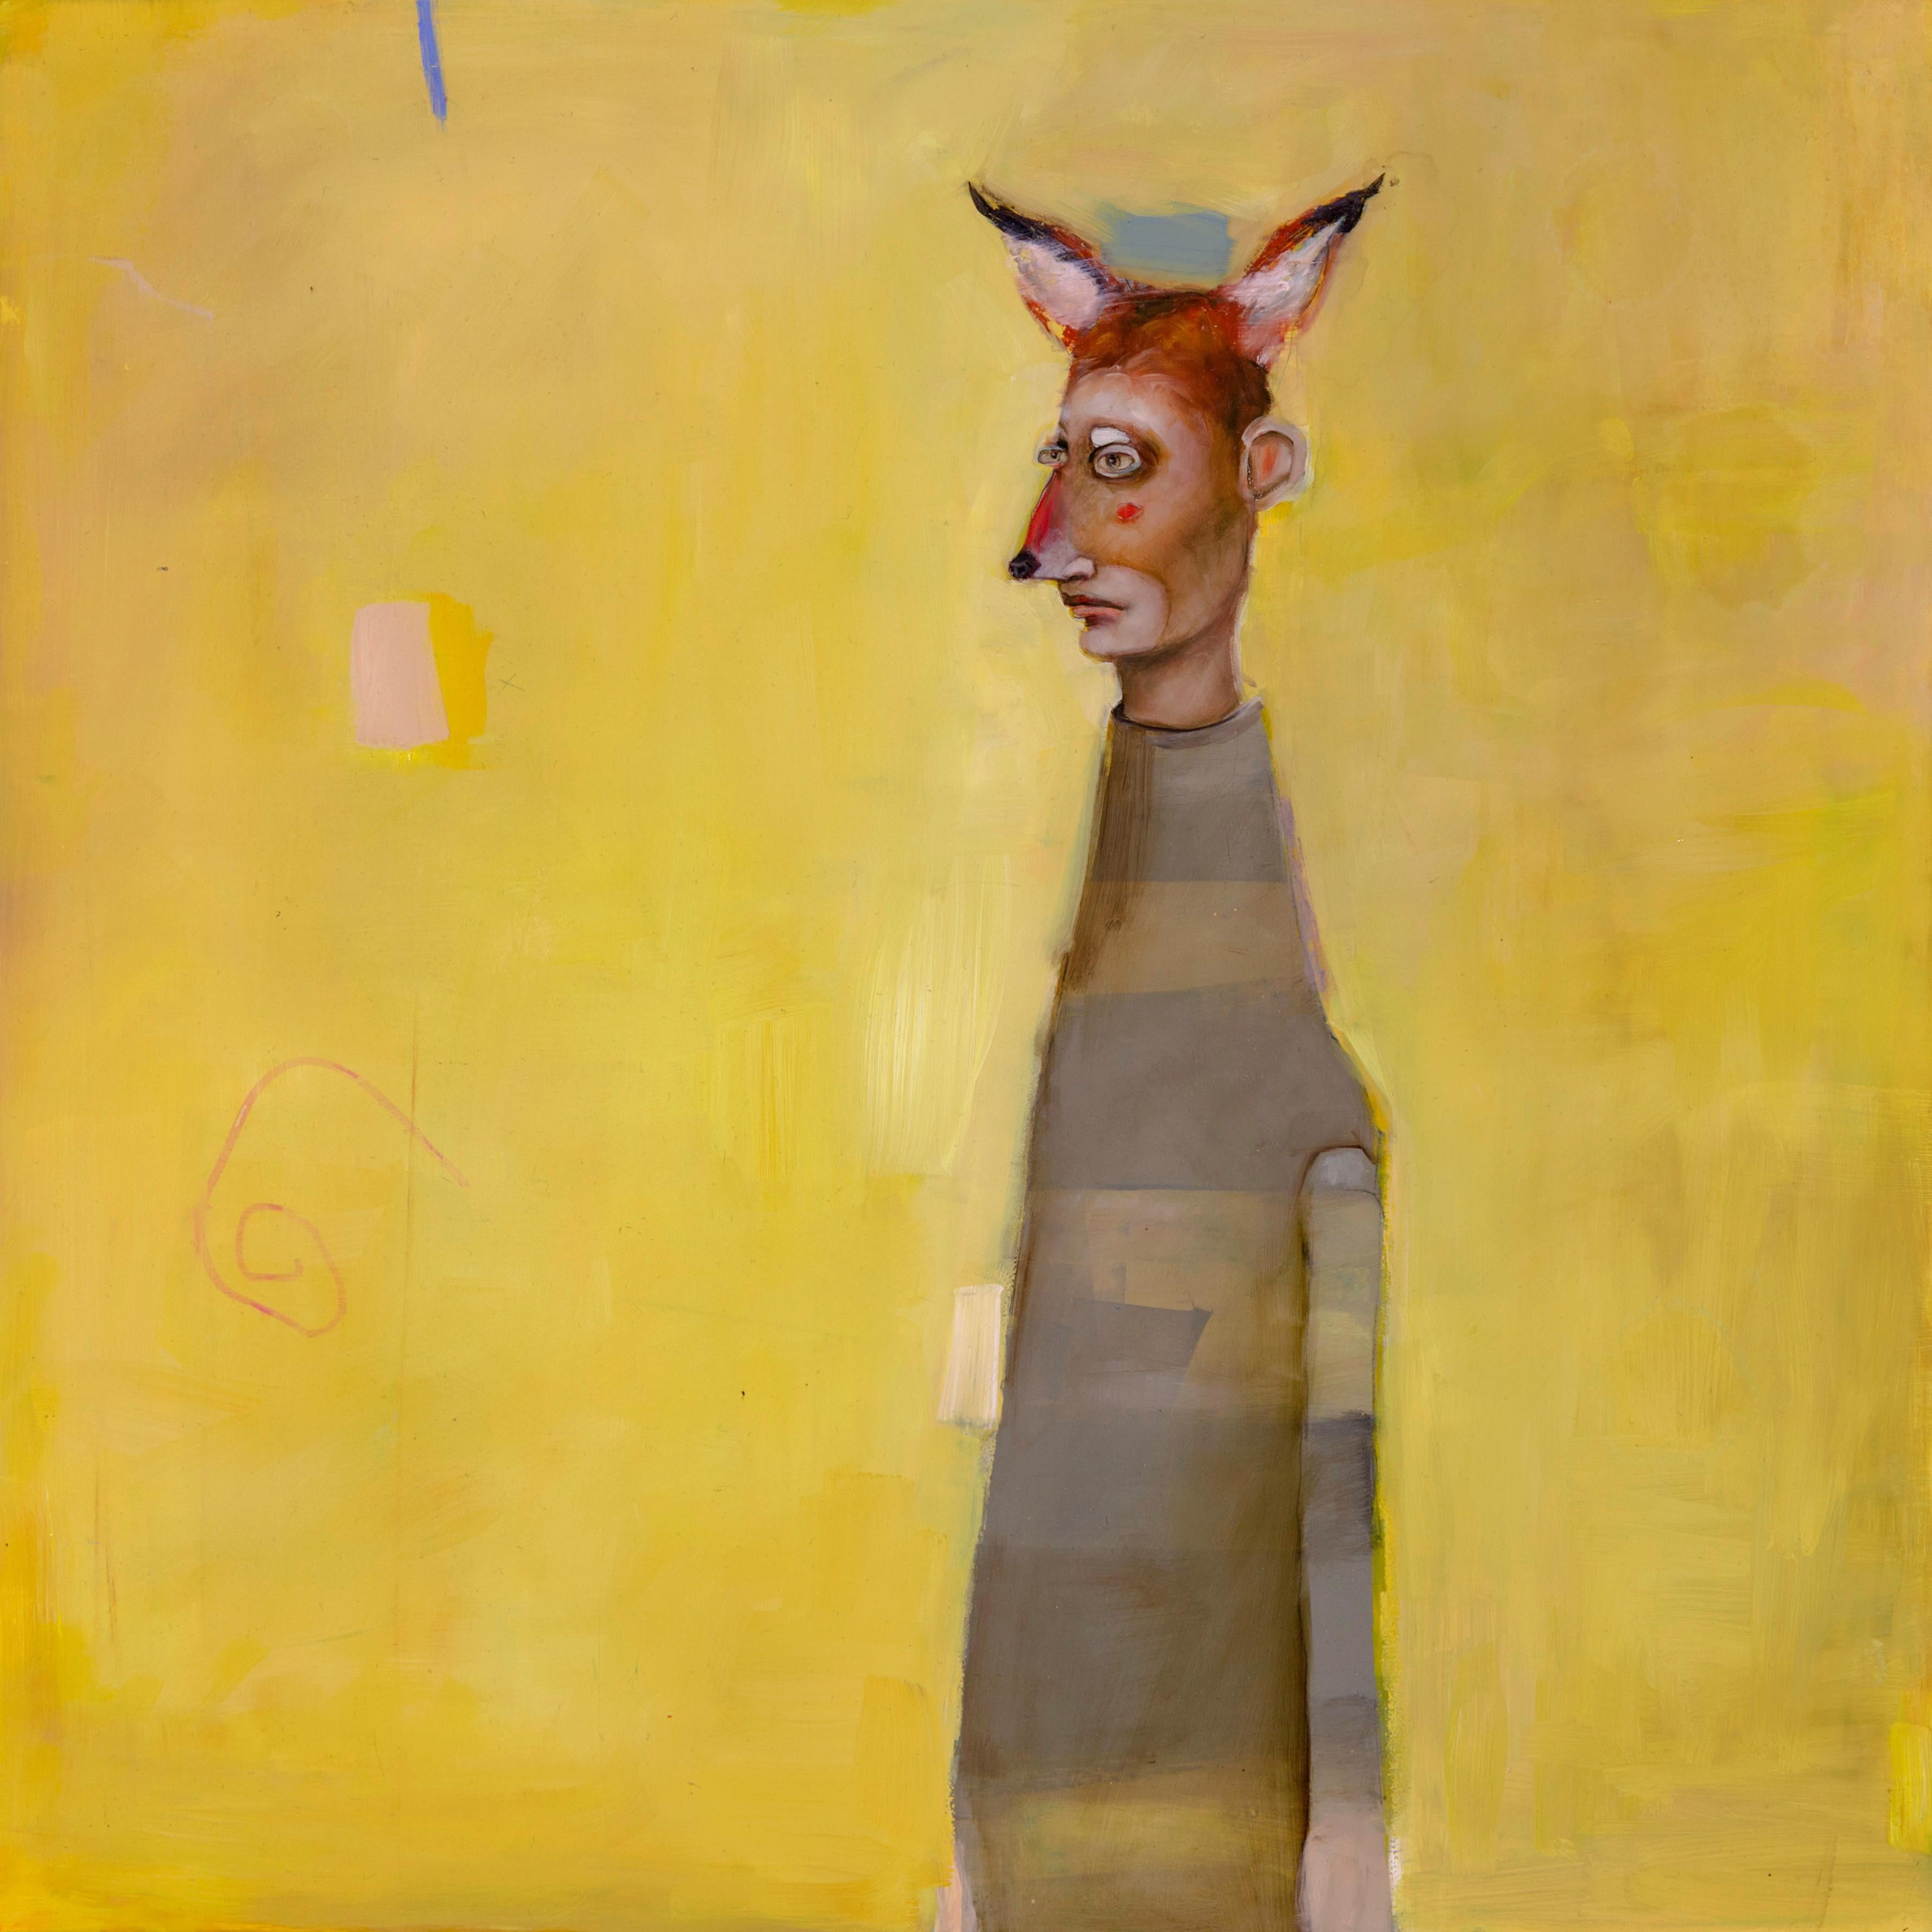 Animal Painting Michele Mikesell - Muddy Fox, huile sur toile, portrait figuratif d'art pop sur fond jaune